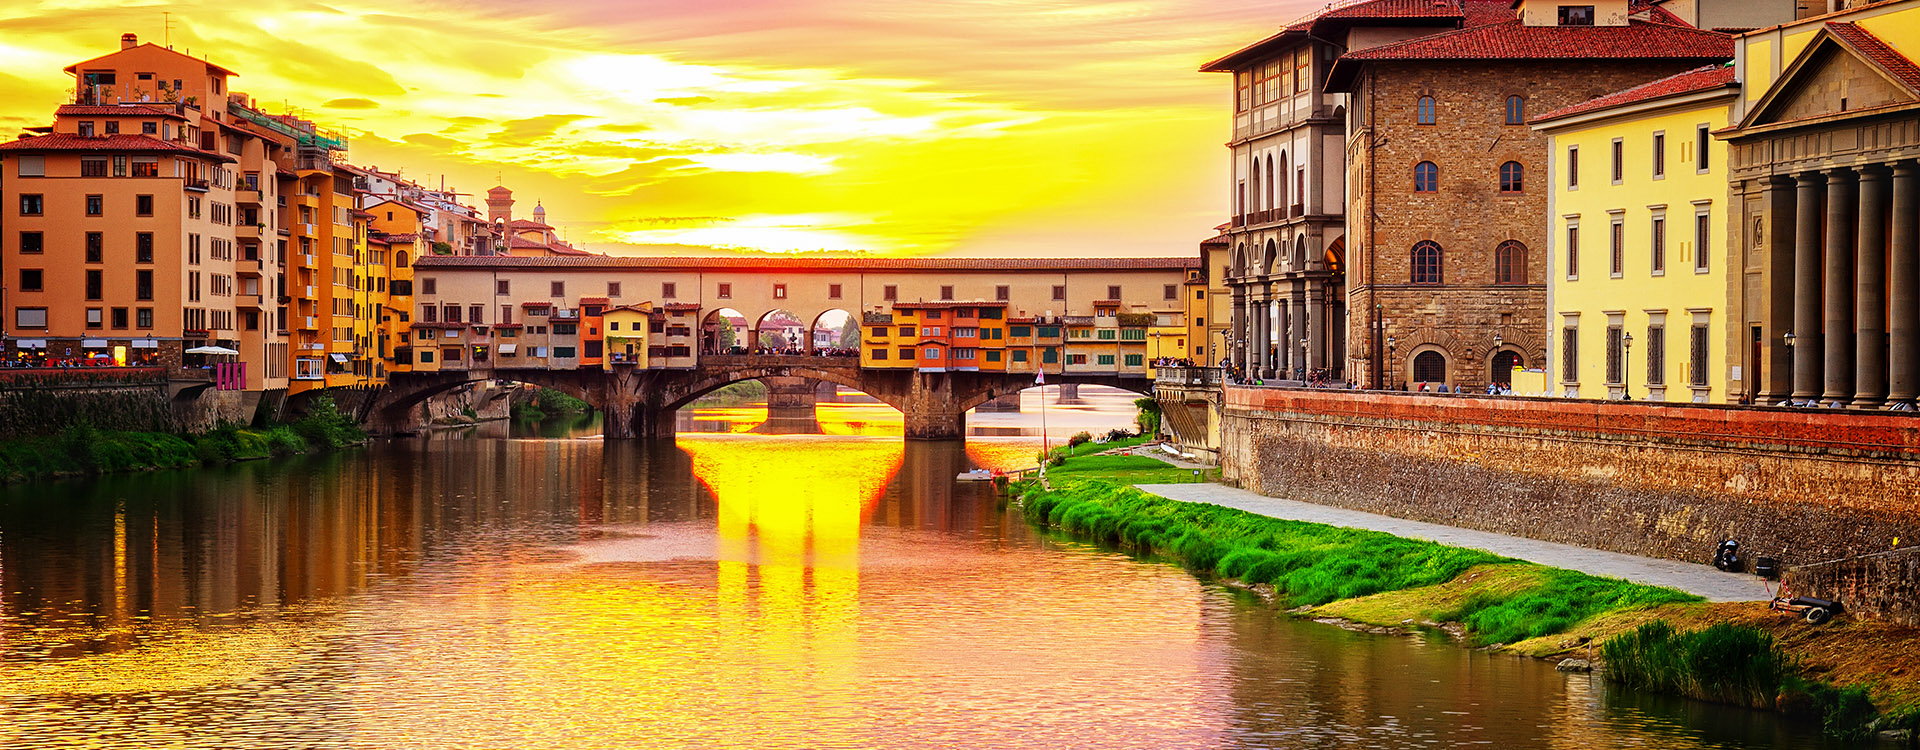 Florence cityscape, famous bridge Ponte Vecchio